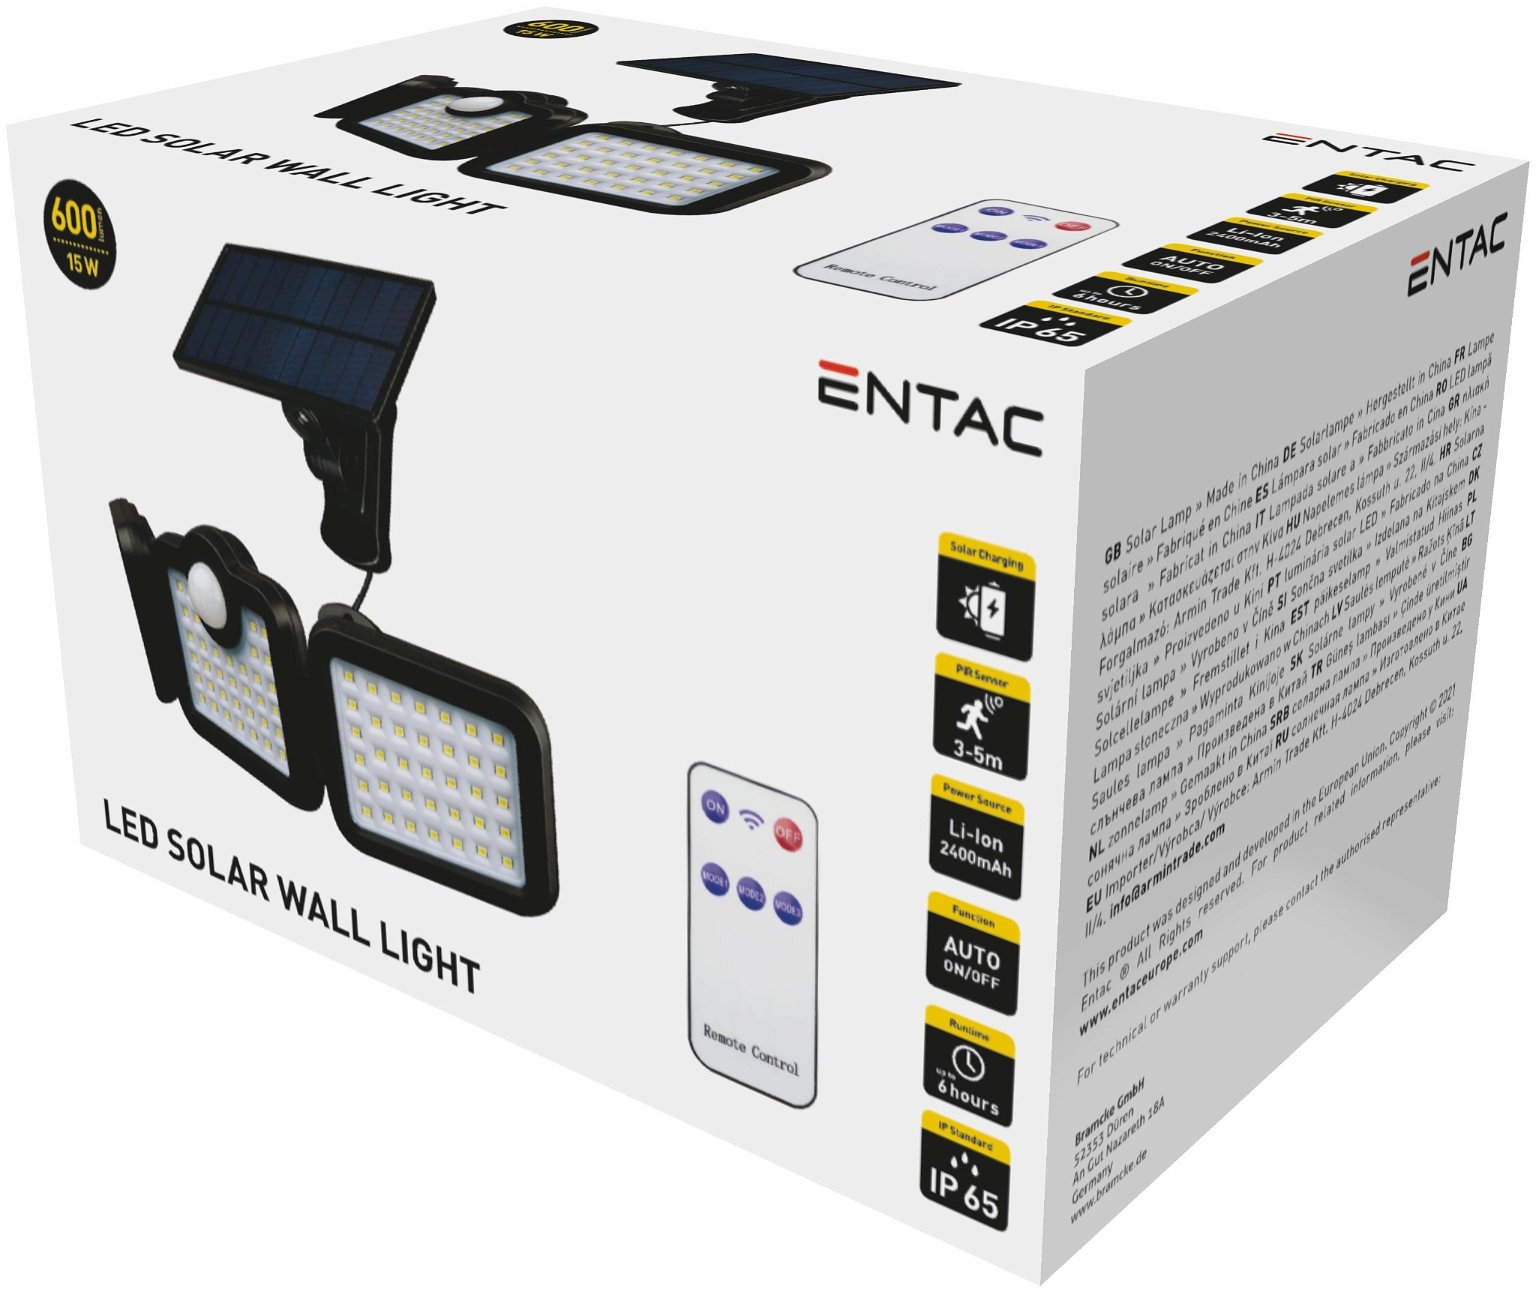 LED lauko prožektorius ENTAC Solar, įkraunamas saulės energija, 15W, su pulteliu - 3